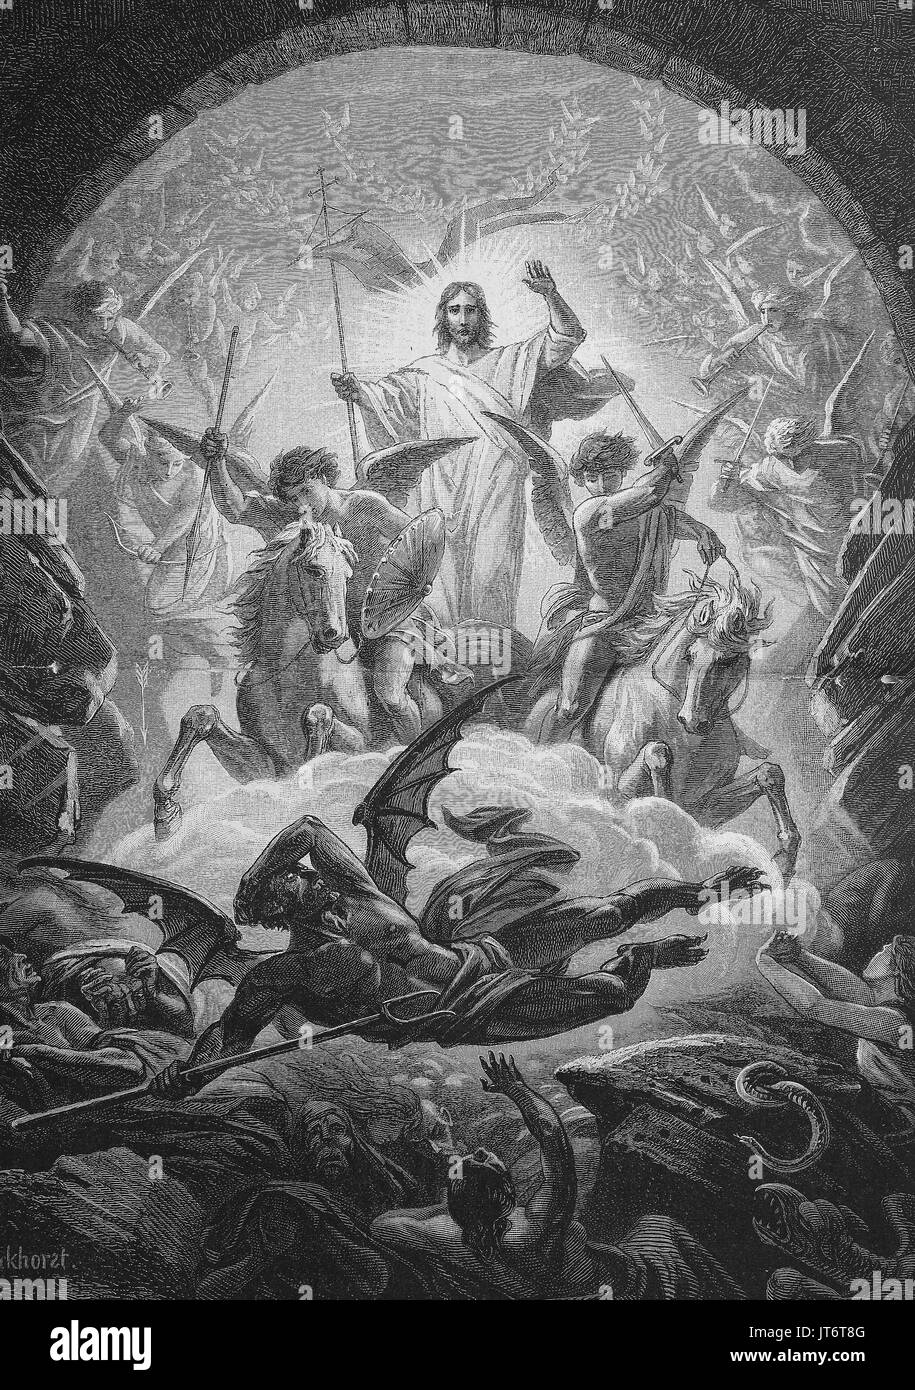 La descente en enfer, le hersage de Hellis la descente triomphale du Christ dans l'enfer entre l'époque de sa crucifixion et sa résurrection, l'amélioration numérique reproduction d'une image publié entre 1880 - 1885 Banque D'Images